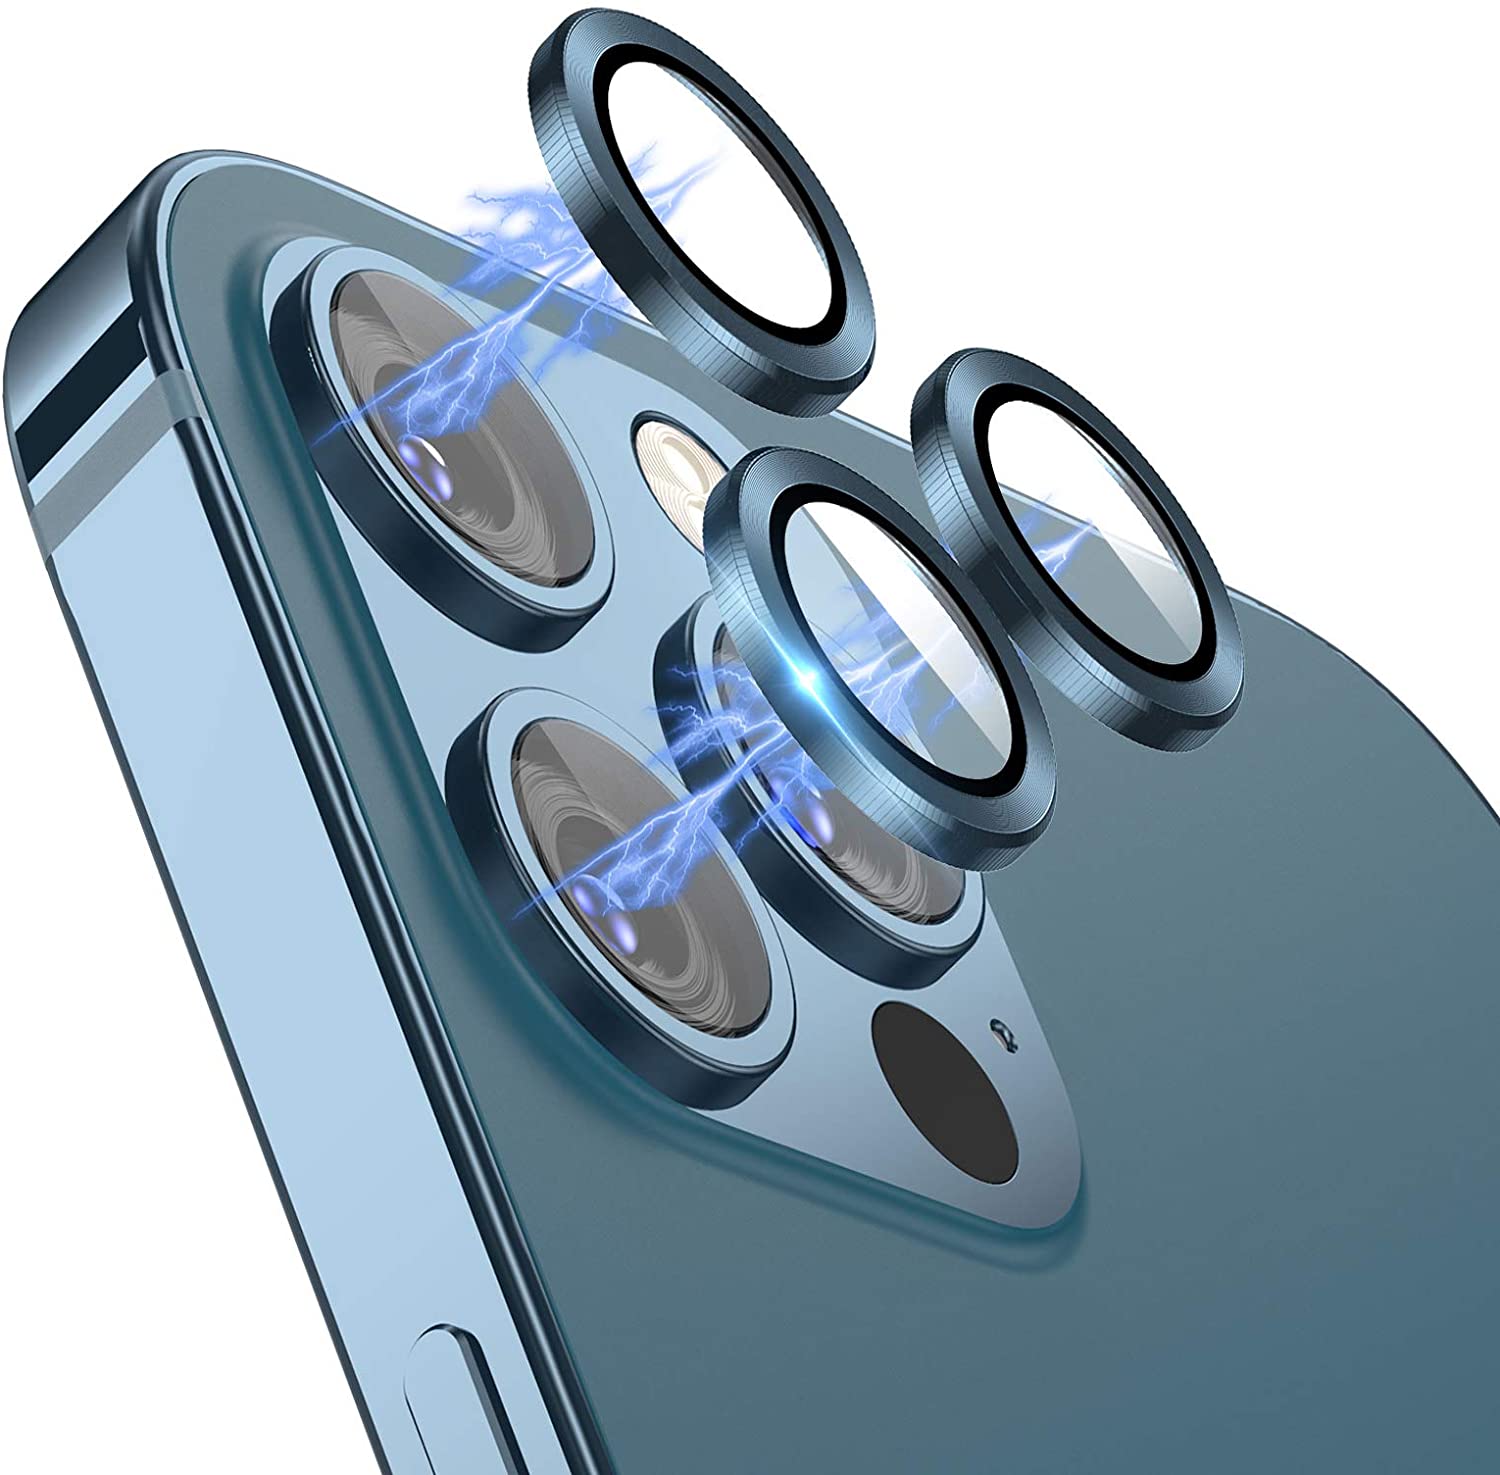 Bộ miếng dán kính cường lực bảo vệ Camera iPhone 12 Pro Max (6.7 inch) hiệu Wiwu Guard Lens Ring